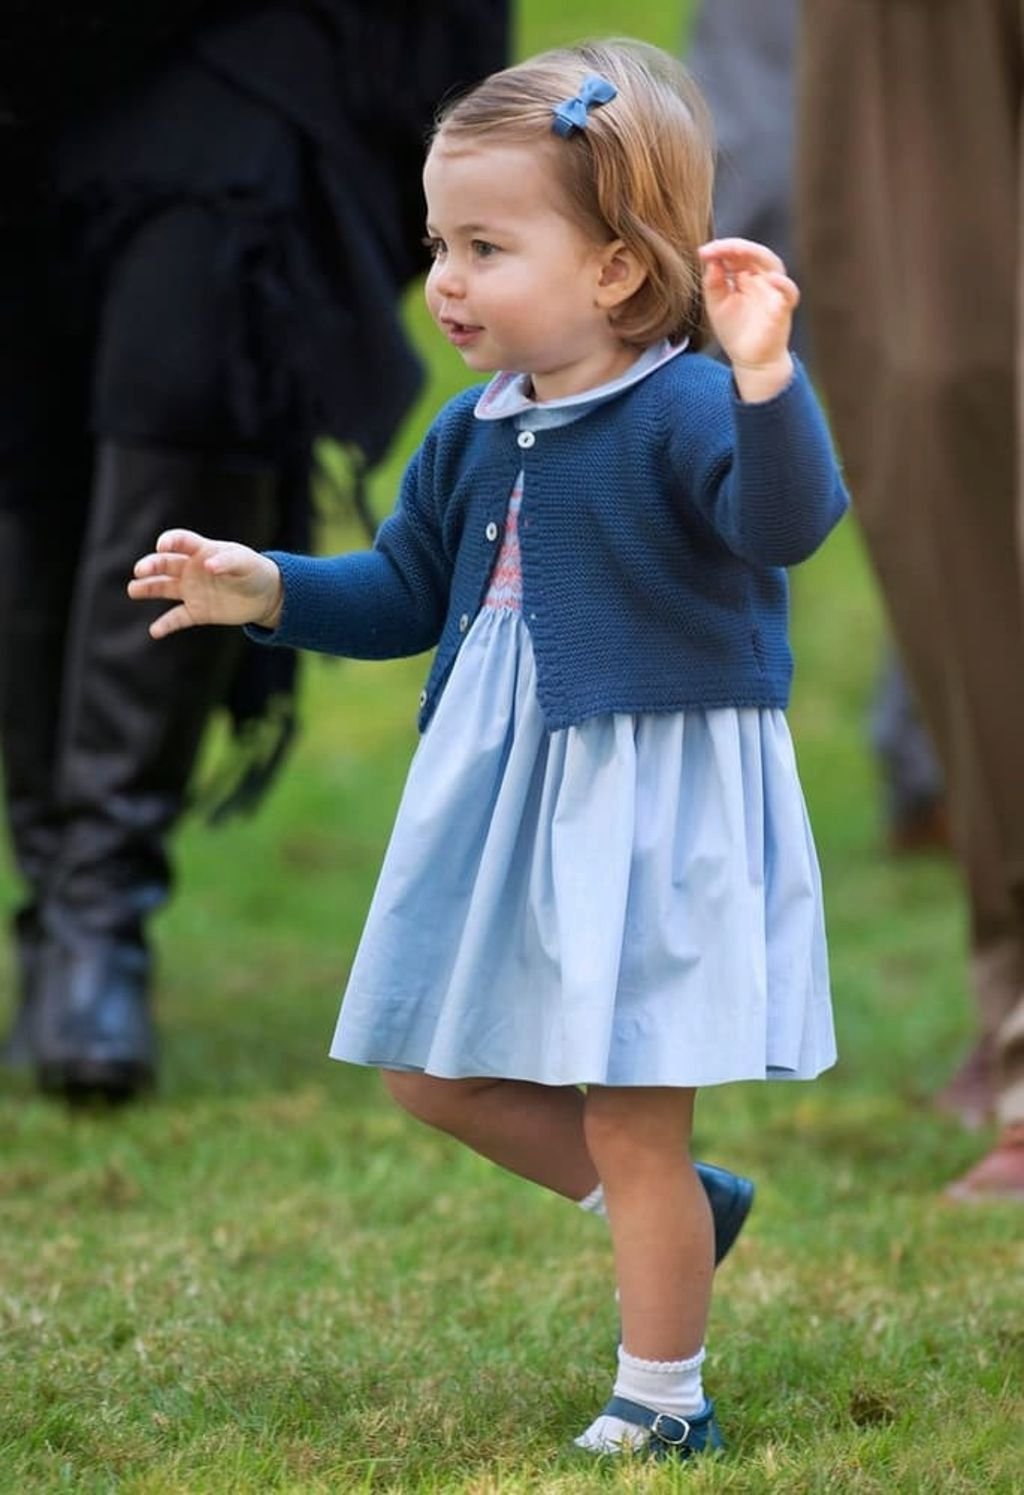 Děti princezny Charlotte nebudou mít nárok na titul